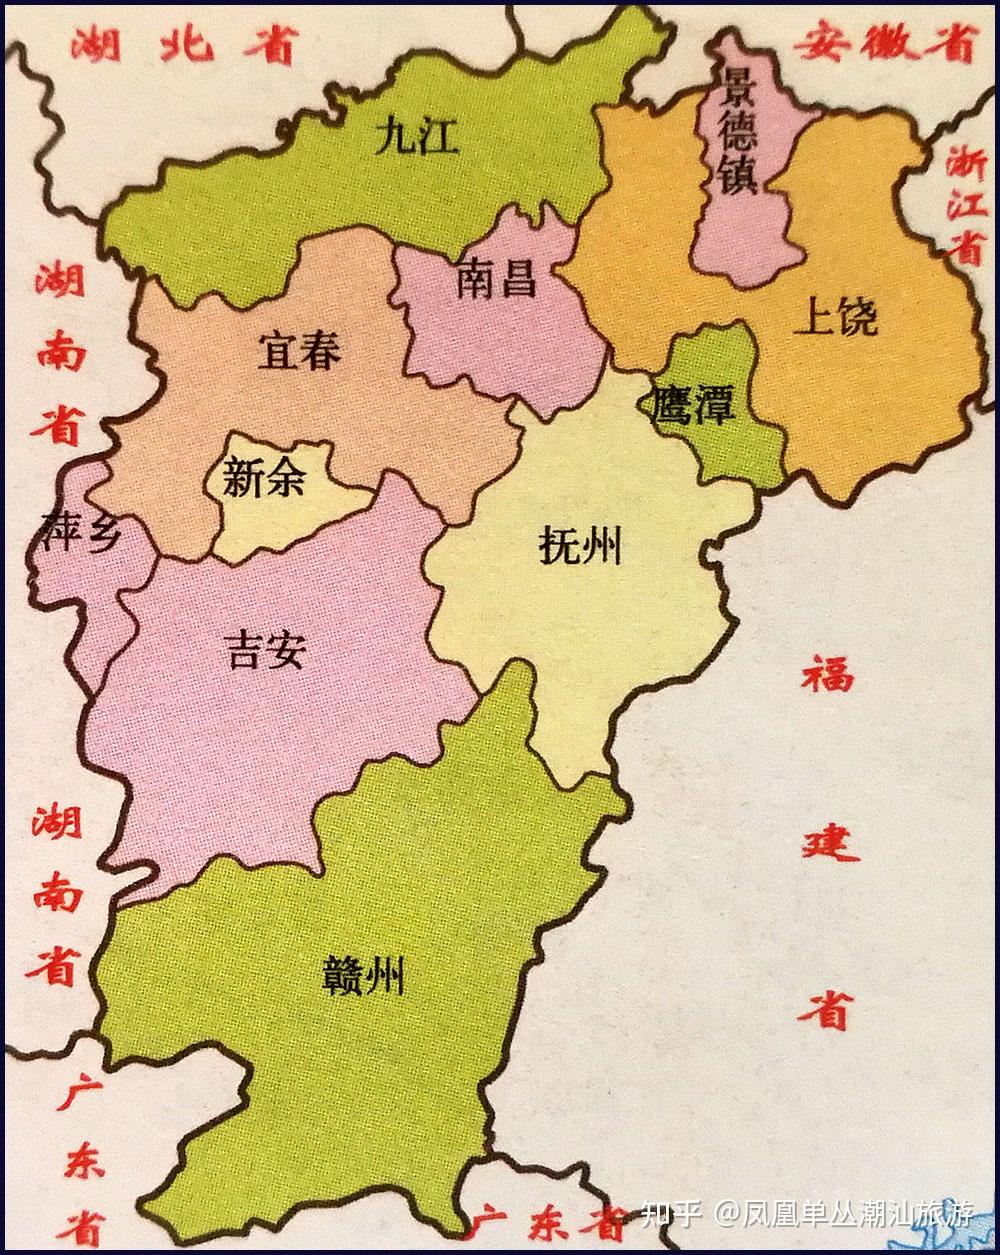 江西省在地图上的位置图片